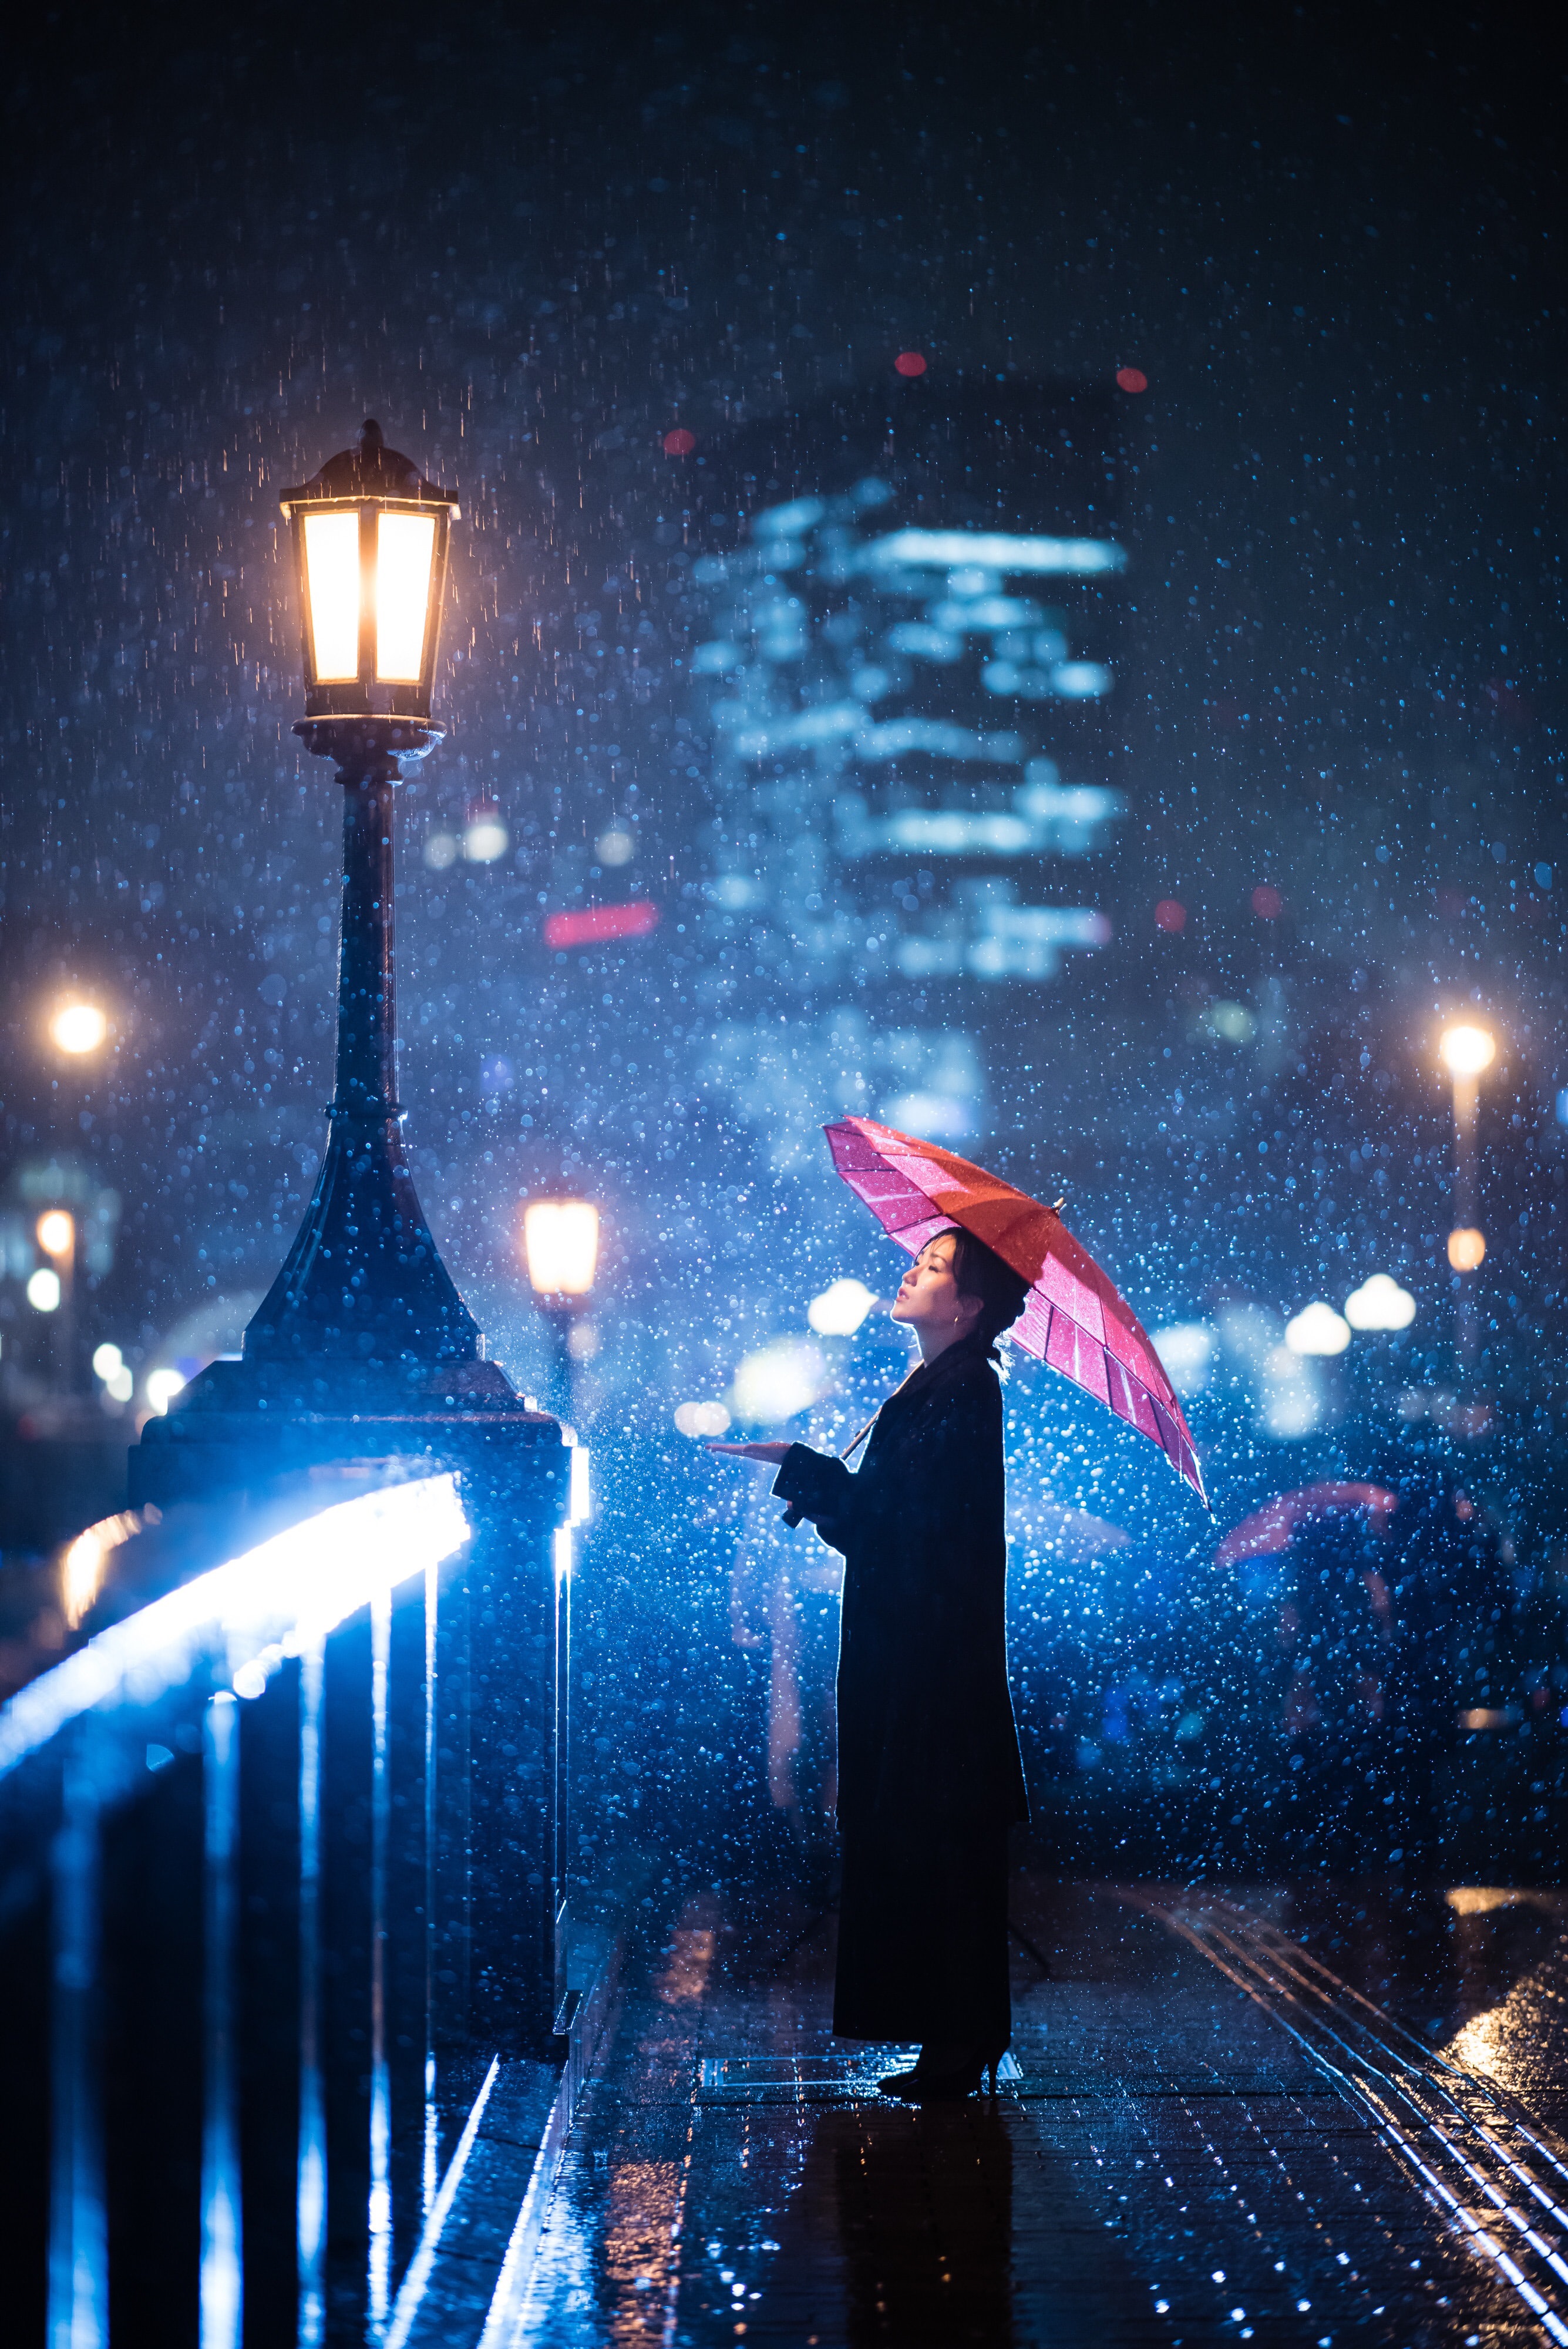 schermata di blocco sfondo hd,pioggia,ombrello,notte,buio,evento